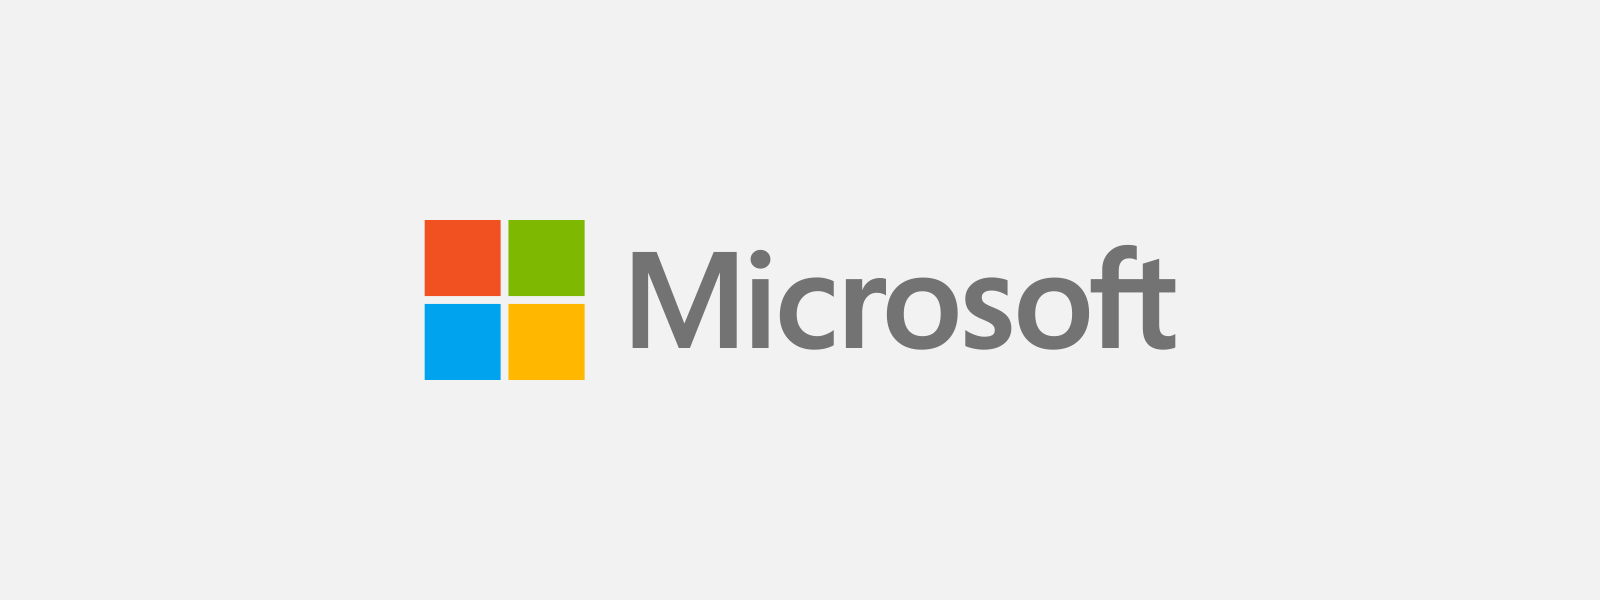 Microsoft — облачные технологии, приложения и игры